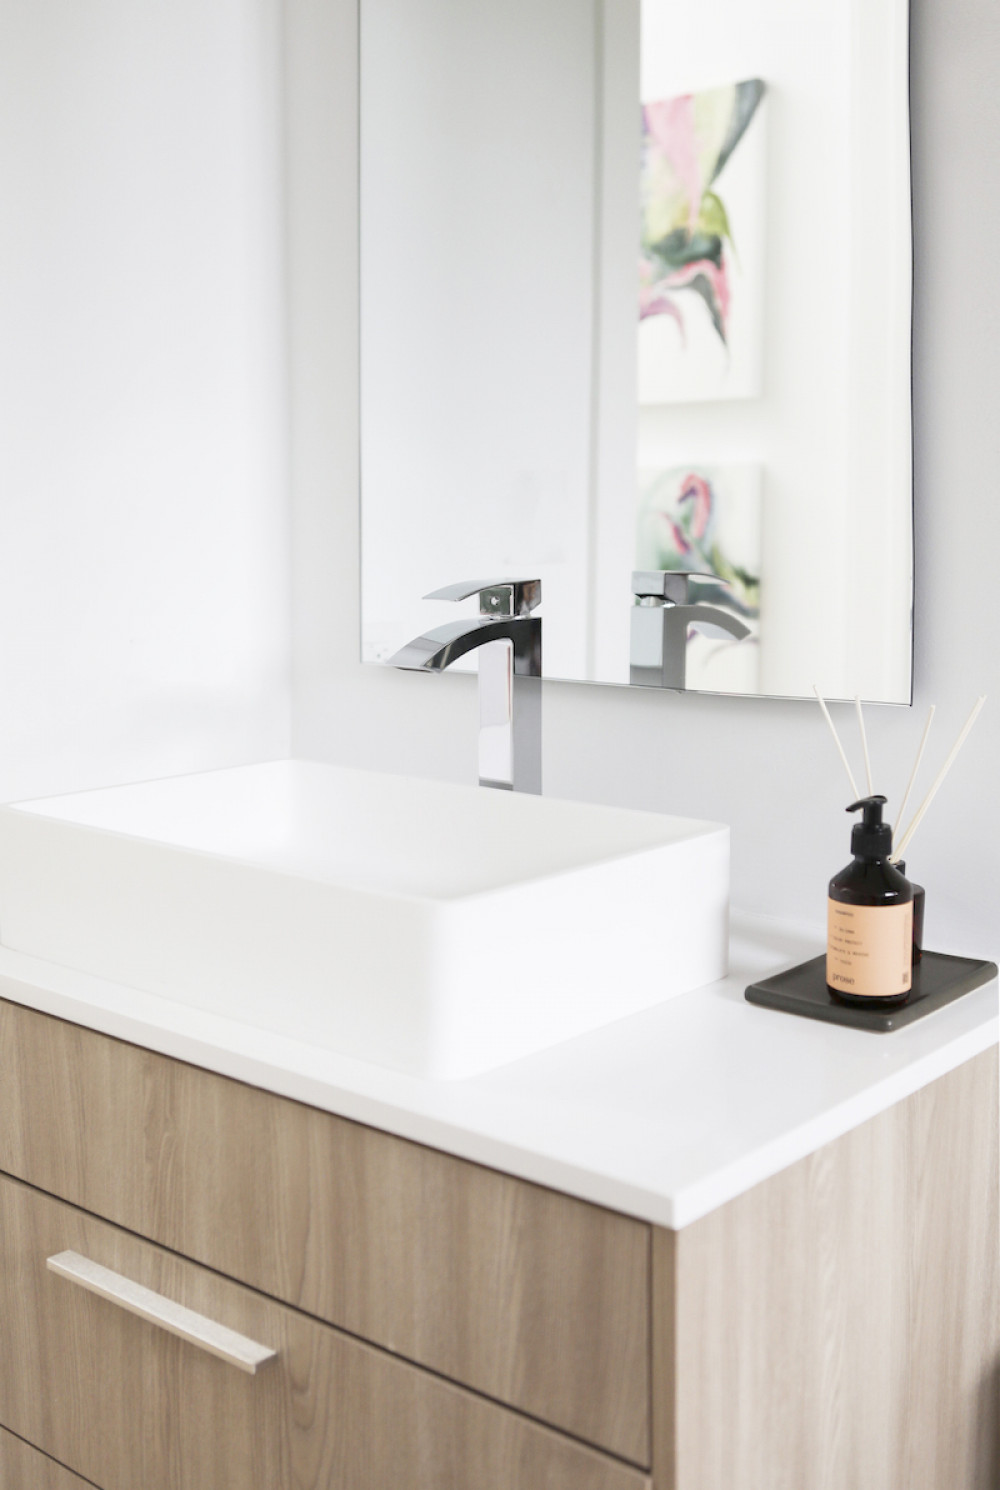 beyond-interior-design-white-bathroom-sink-diffuser